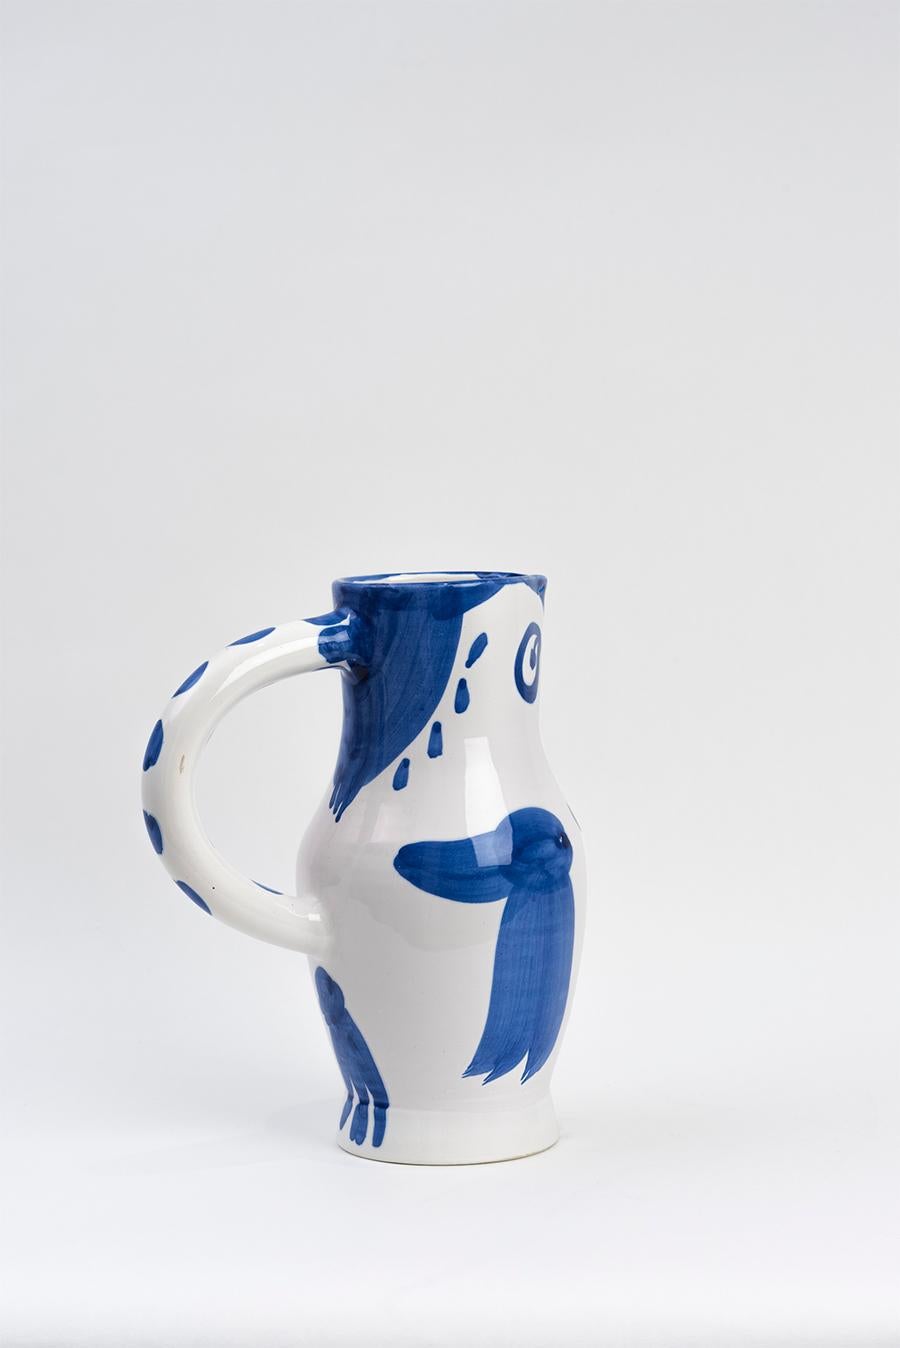 Pablo Picasso - Madoura Ceramic: Owl (Hibou) 1954 1